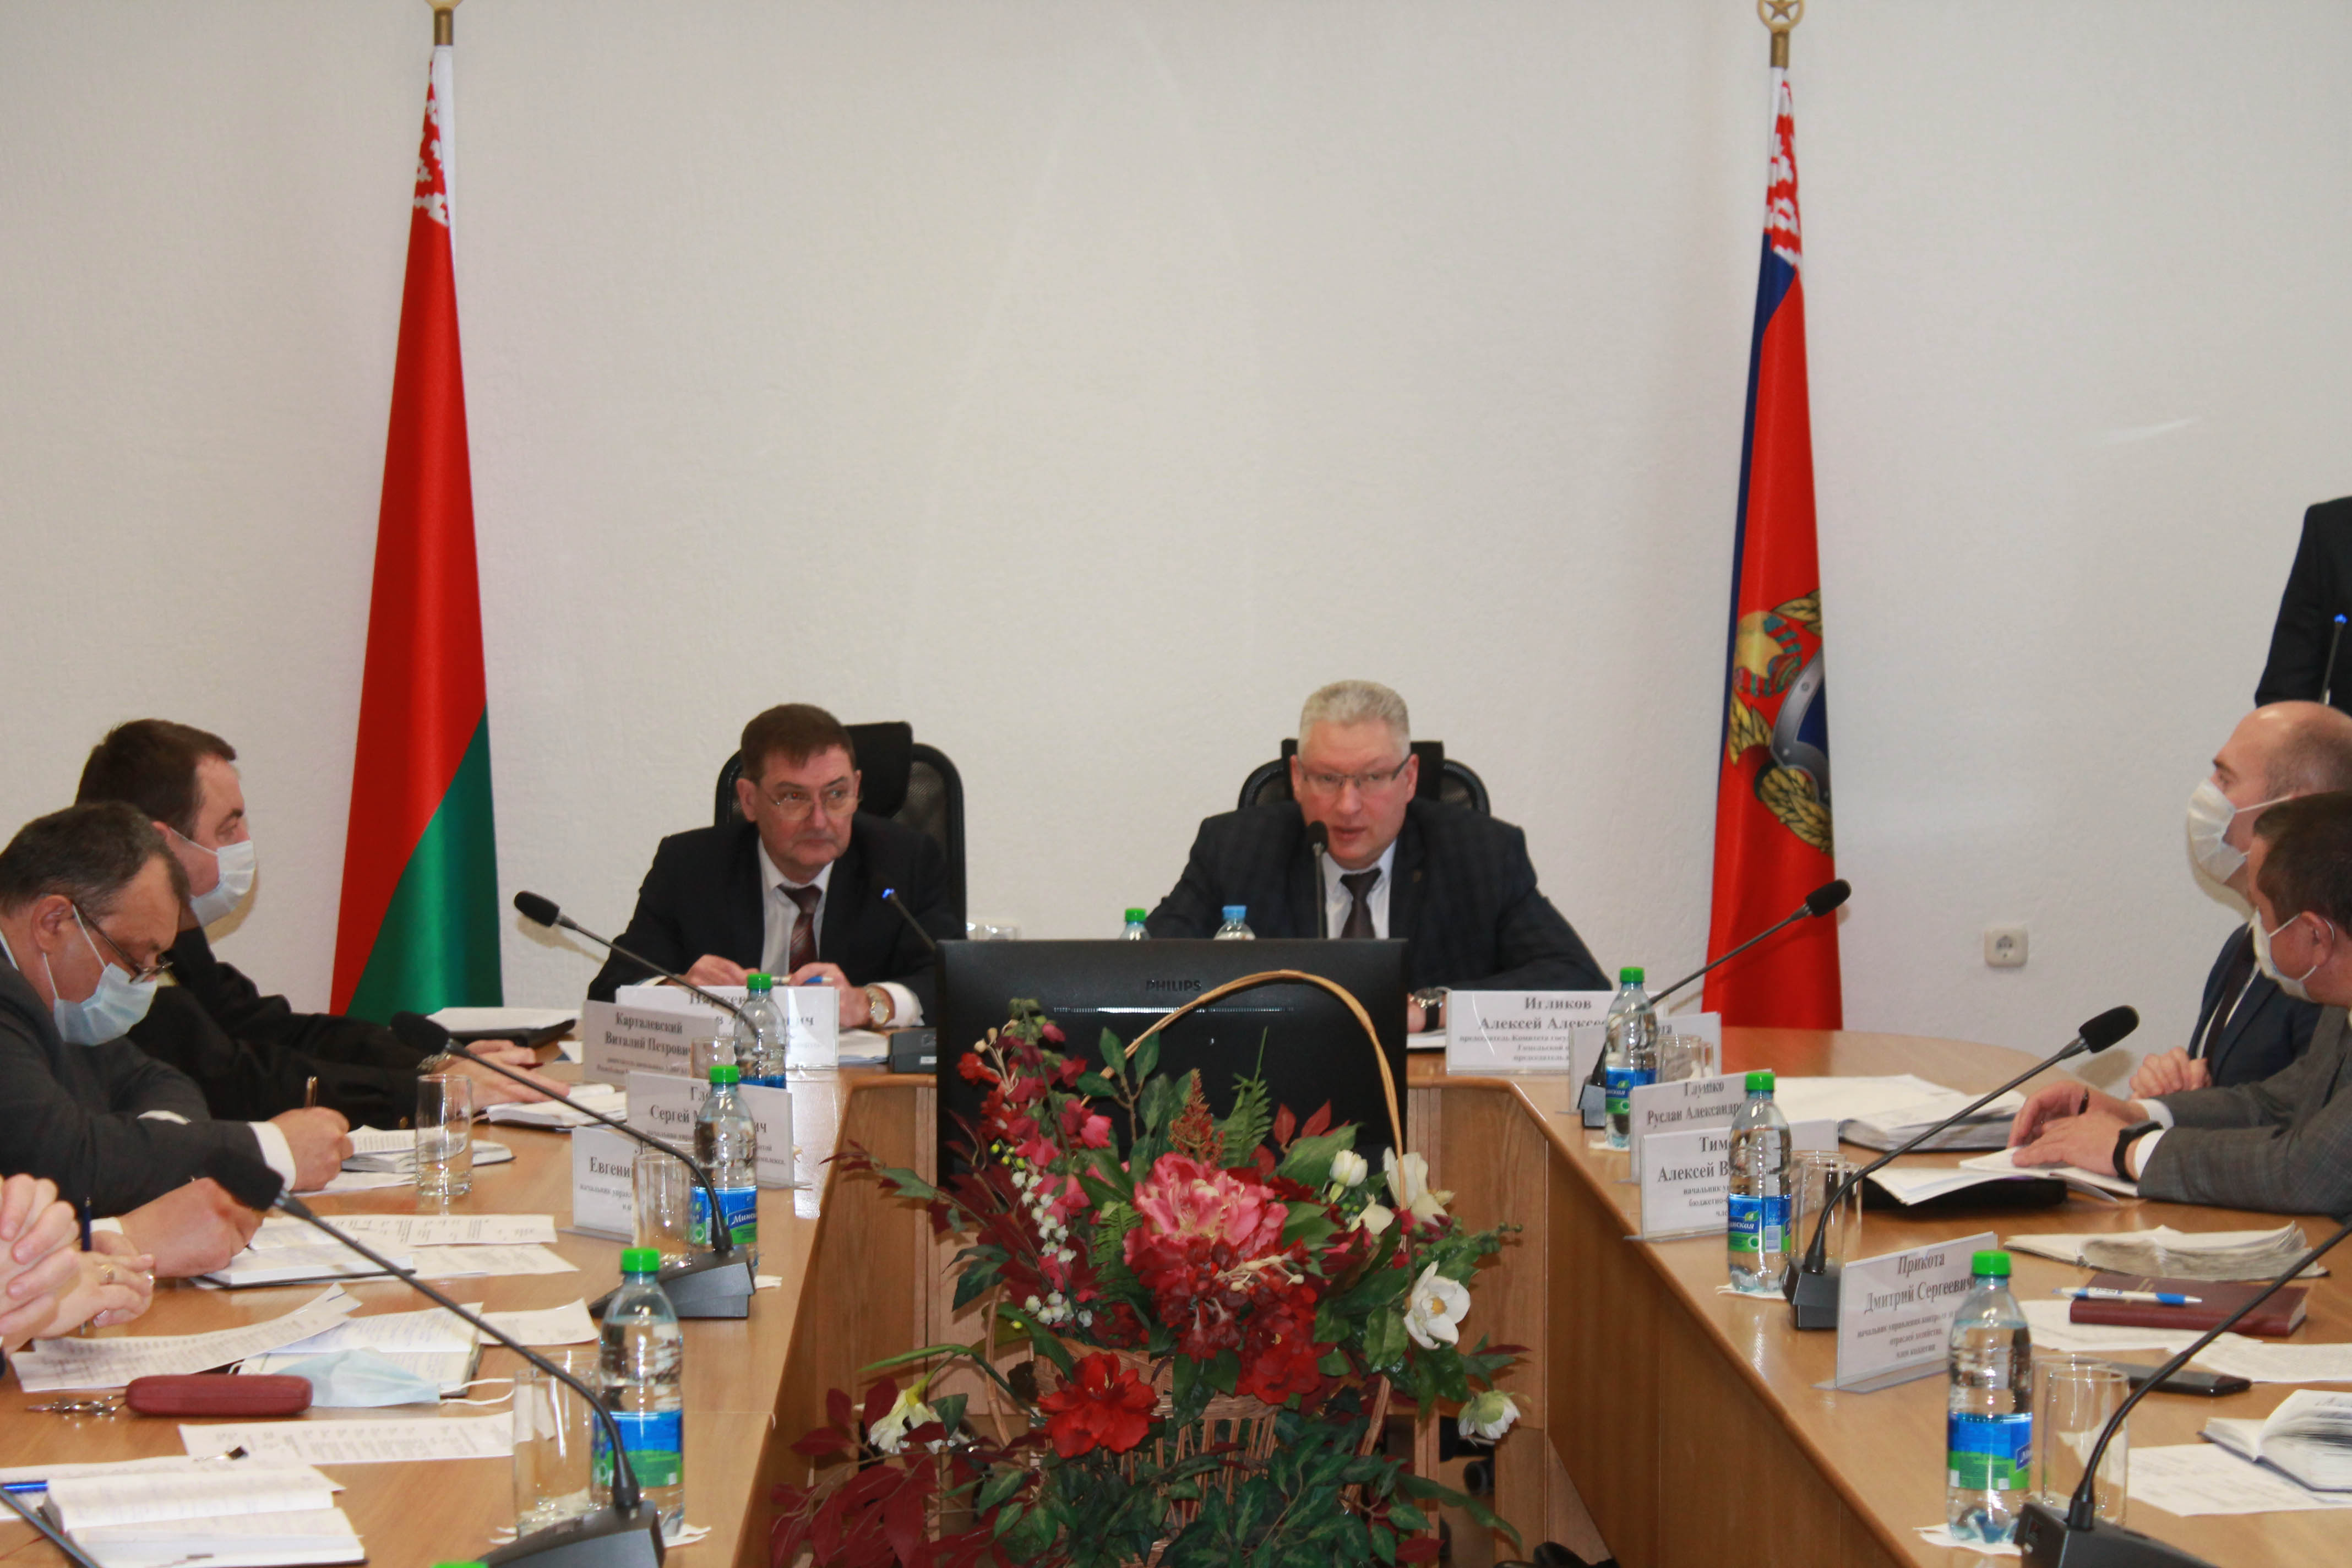 Комитетом государственного контроля Гомельской области подведены итоги работы за 2021 год и определены задачи на 2022 год